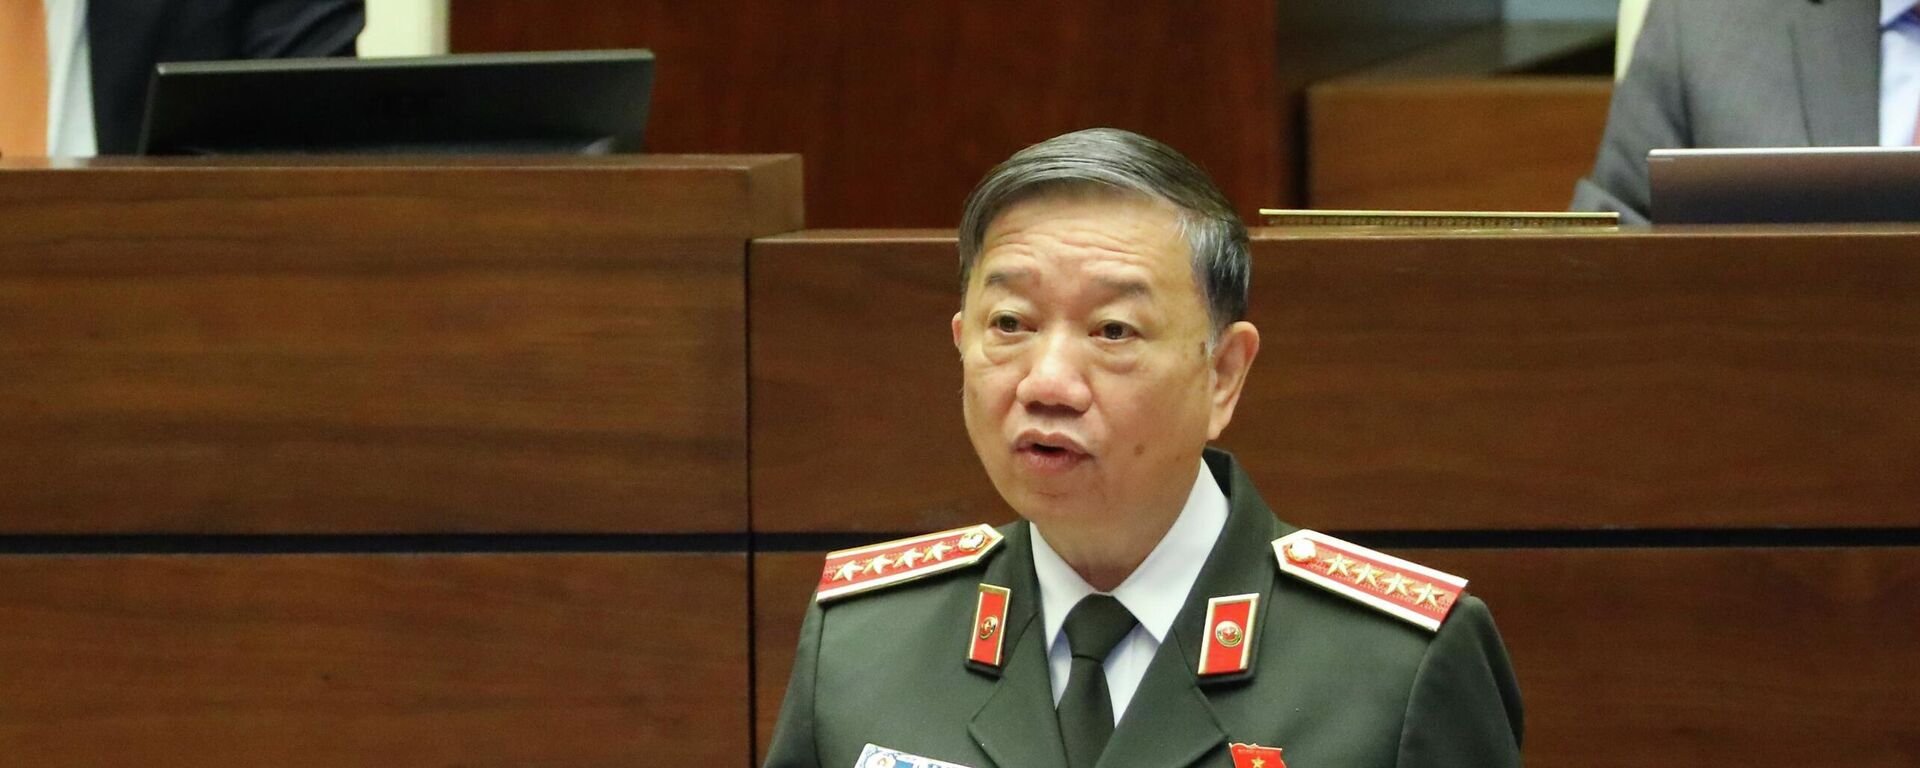 Bộ trưởng Bộ Công an Tô Lâm phát biểu giải trình, làm rõ một số vấn đề đại biểu Quốc hội nêu - Sputnik Việt Nam, 1920, 04.12.2021